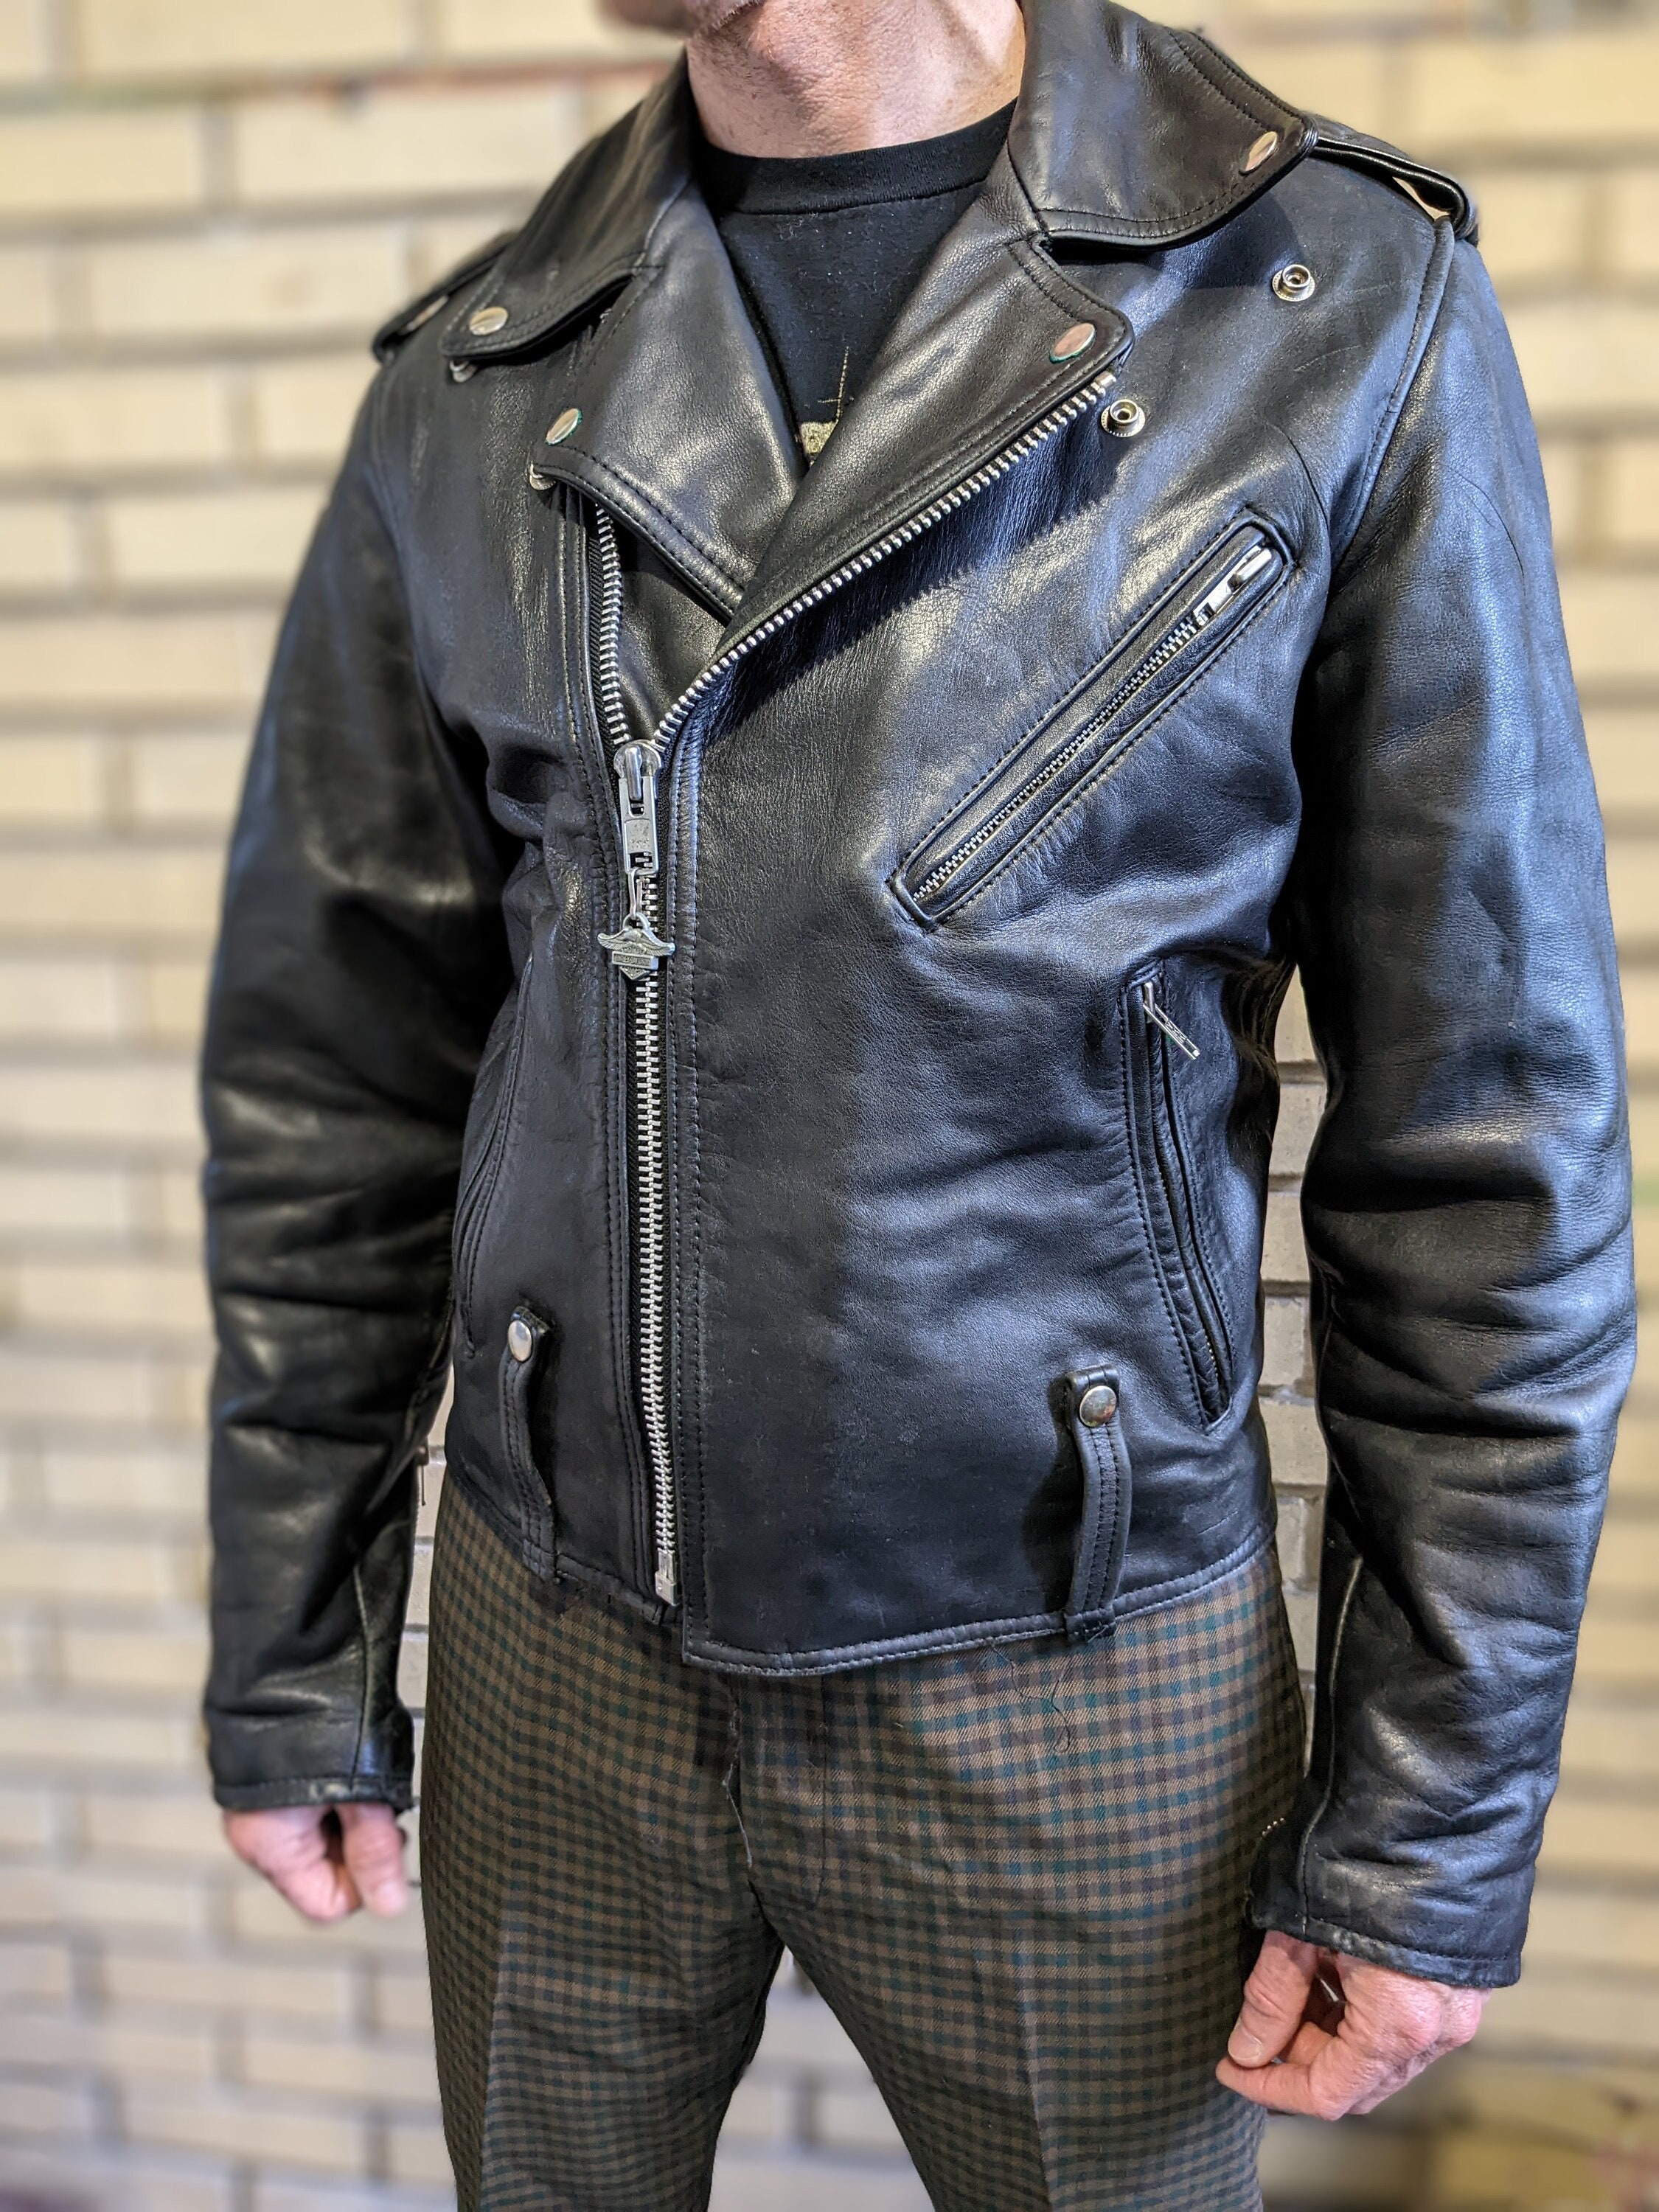 Harley Davidson leather jacket np.gov.lk